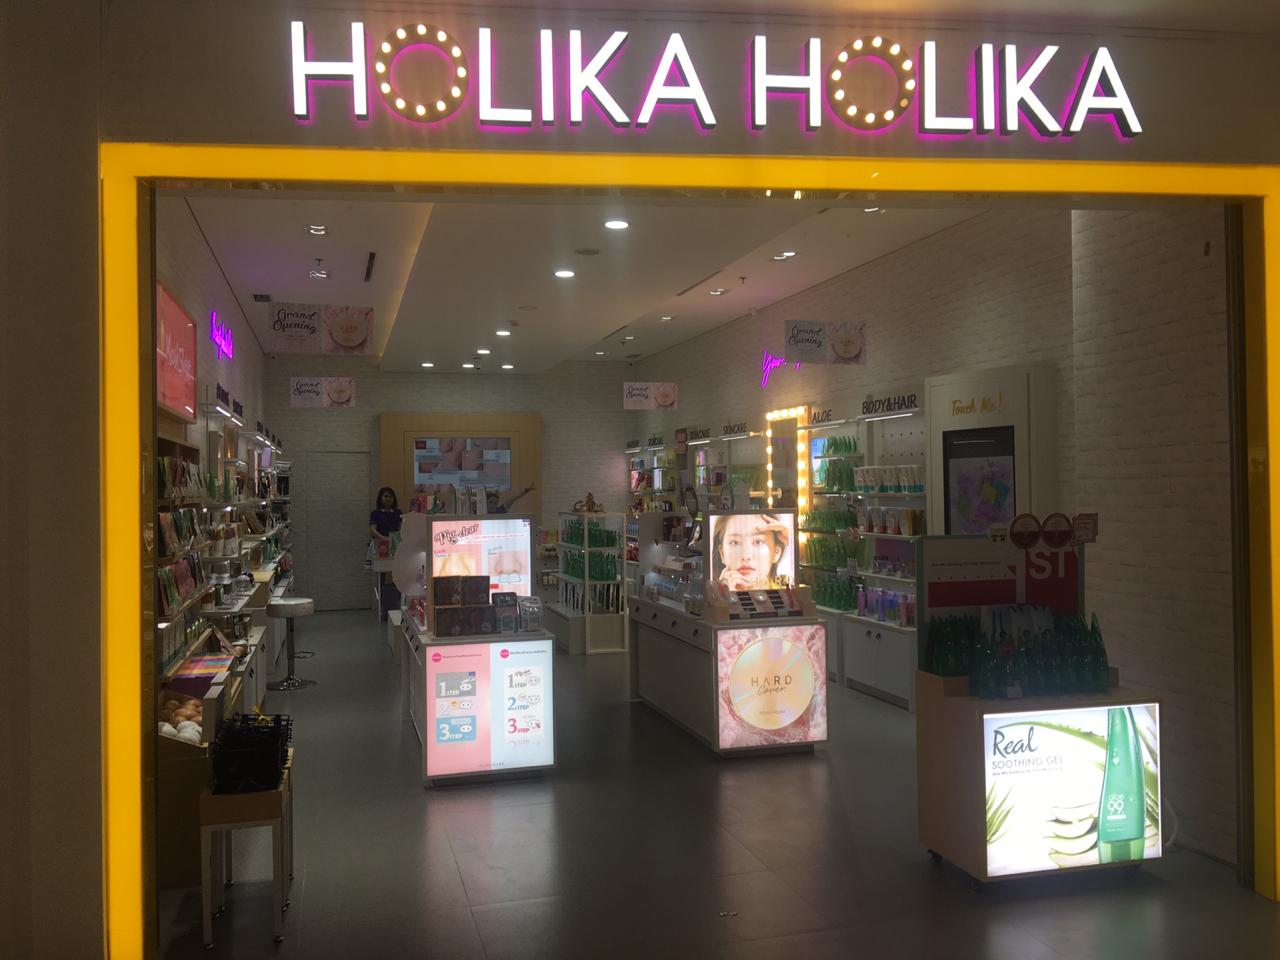 Holika Holika shop front in lippo mall puri st. moritz